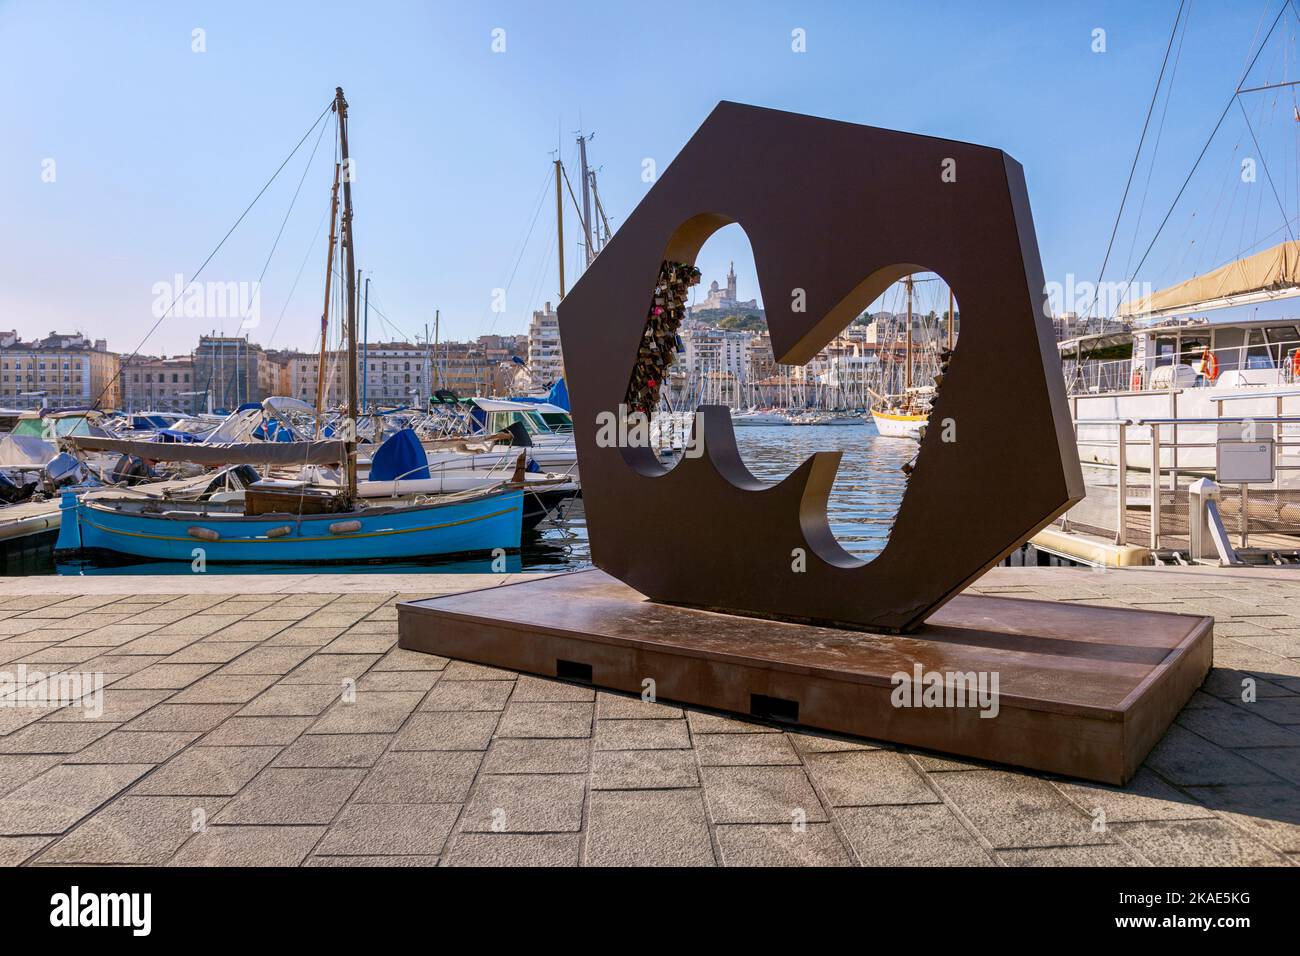 La lettera M sul molo del Porto Vecchio con serrature d'amore, barche ormeggiate nel porto turistico, Marsiglia Foto Stock